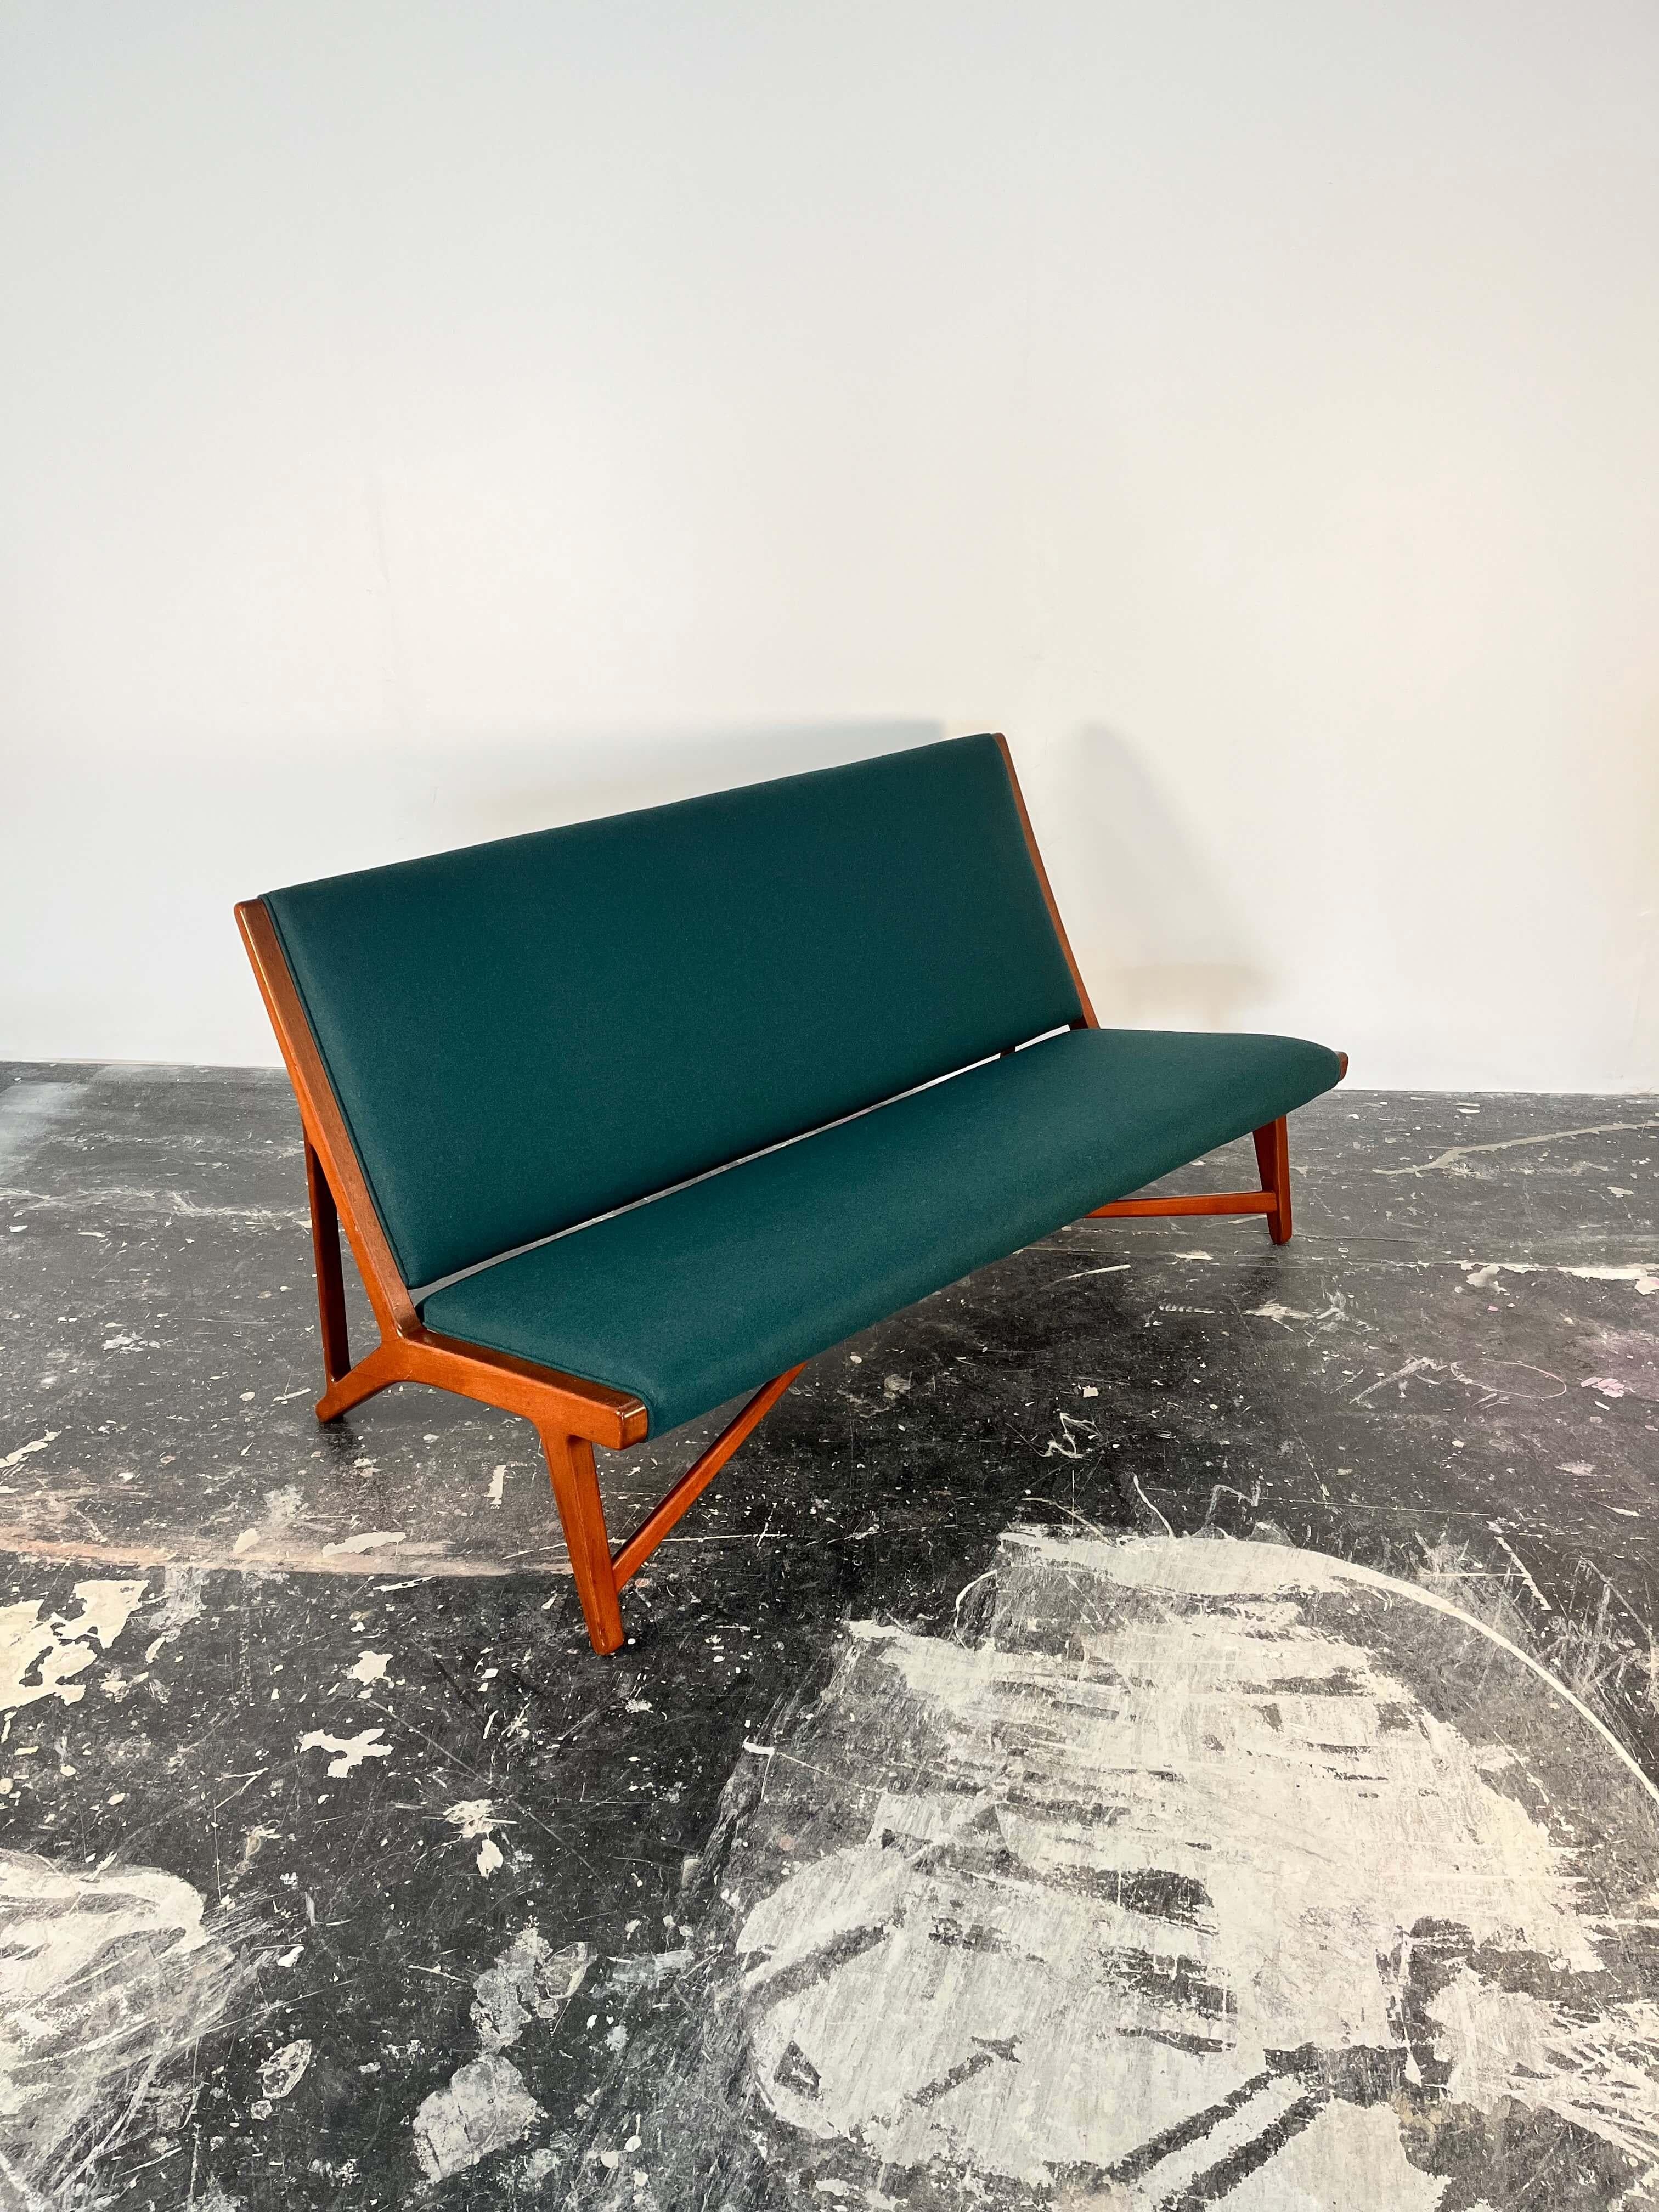 Nous sommes ravis de vous présenter ce superbe canapé Hans J. Wegner pour Johannes Hansen, modèle JH 555, avec assise et dossier rembourrés en biais, sur une base en teck, dans une laine neuve d'un vert éclatant. Marqué du cachet du fabricant avec